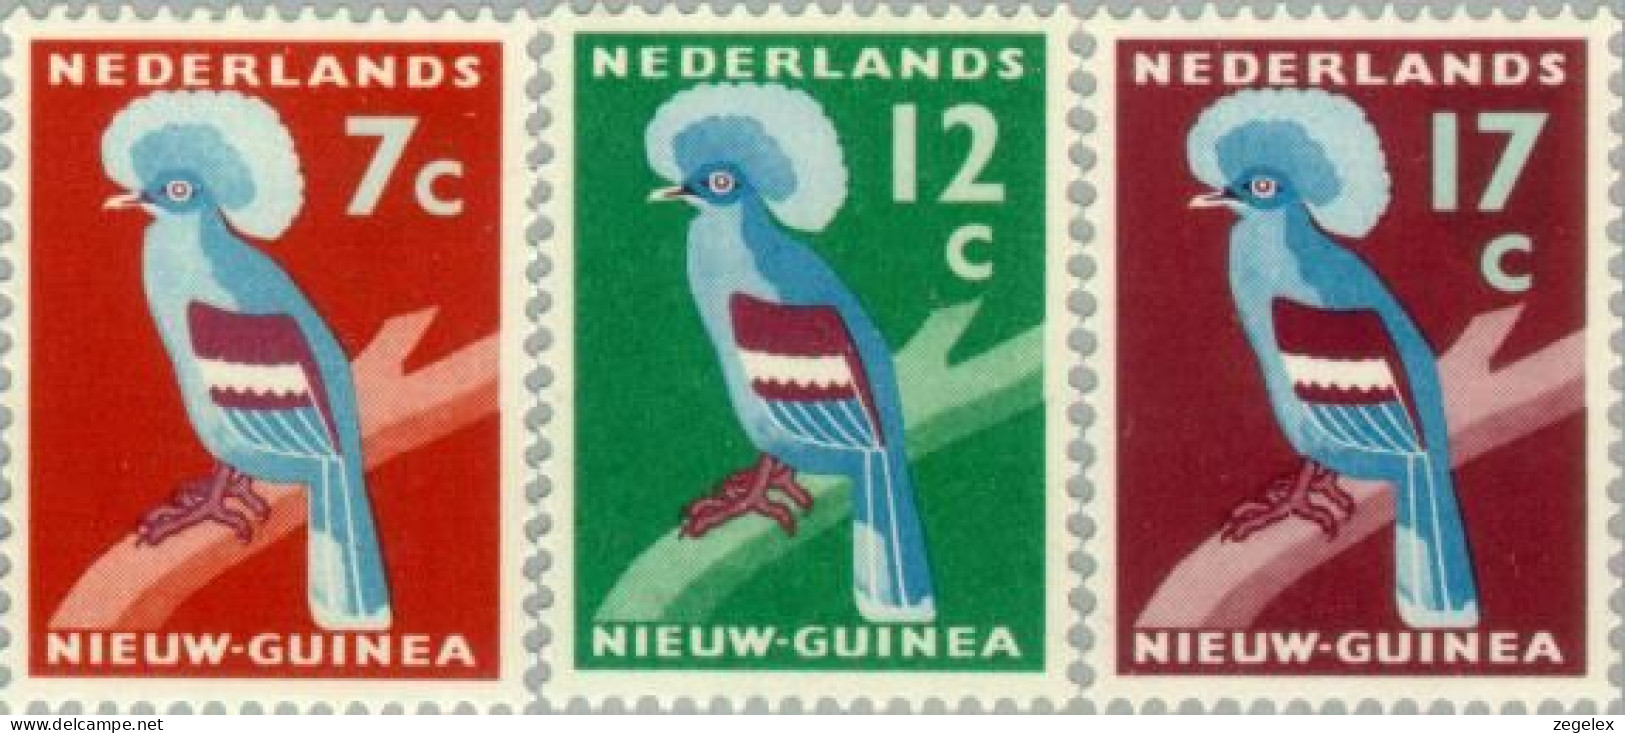 Nederlands Nieuw Guinea 1959, Kroonduif NVPH 54-56 MH*/ongestempeld. Bird, Oiseau, Vogel - Netherlands New Guinea